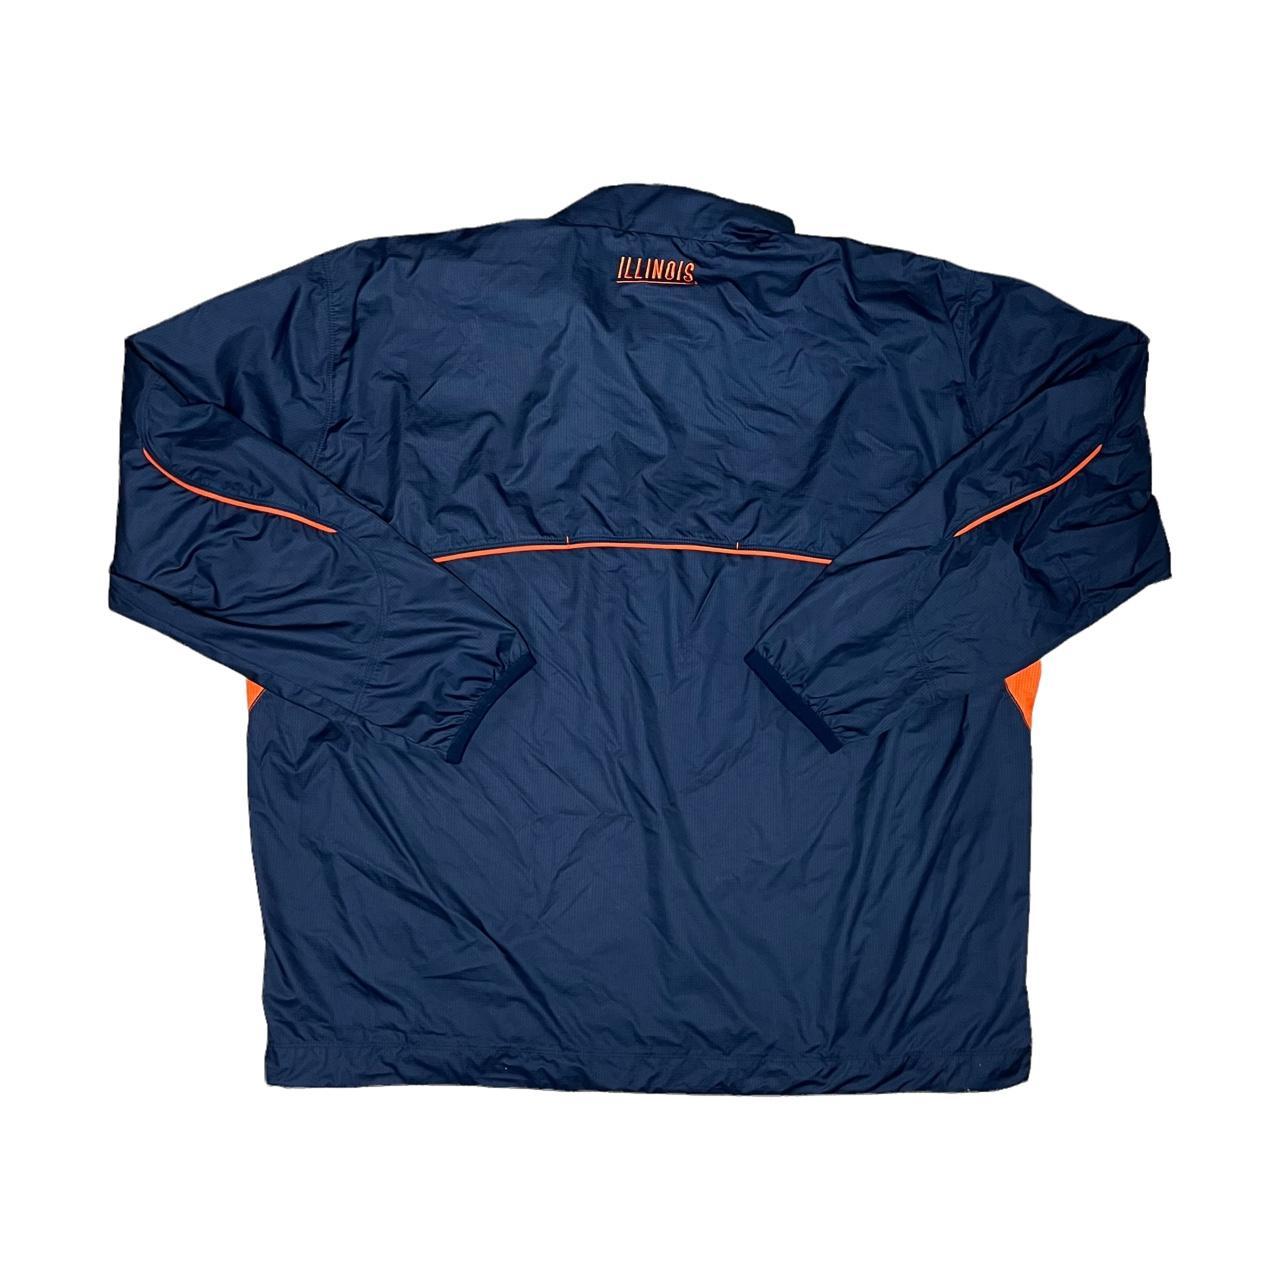 Nike Men's Navy and Orange Jacket (3)